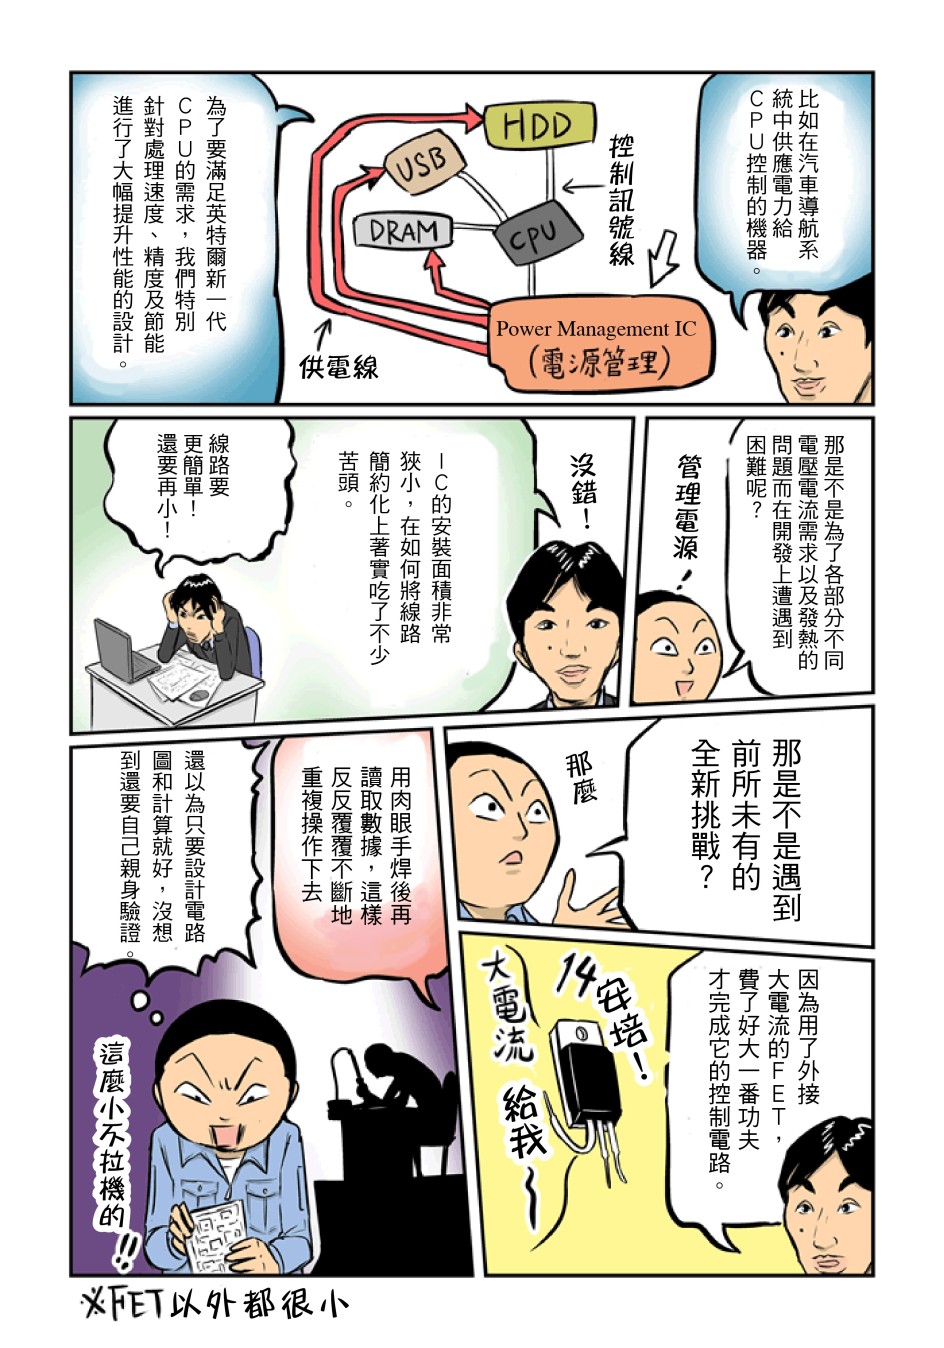 漫畫 為ROHM流下男兒淚!見野 榮司(MIRUNO EIJI) 2